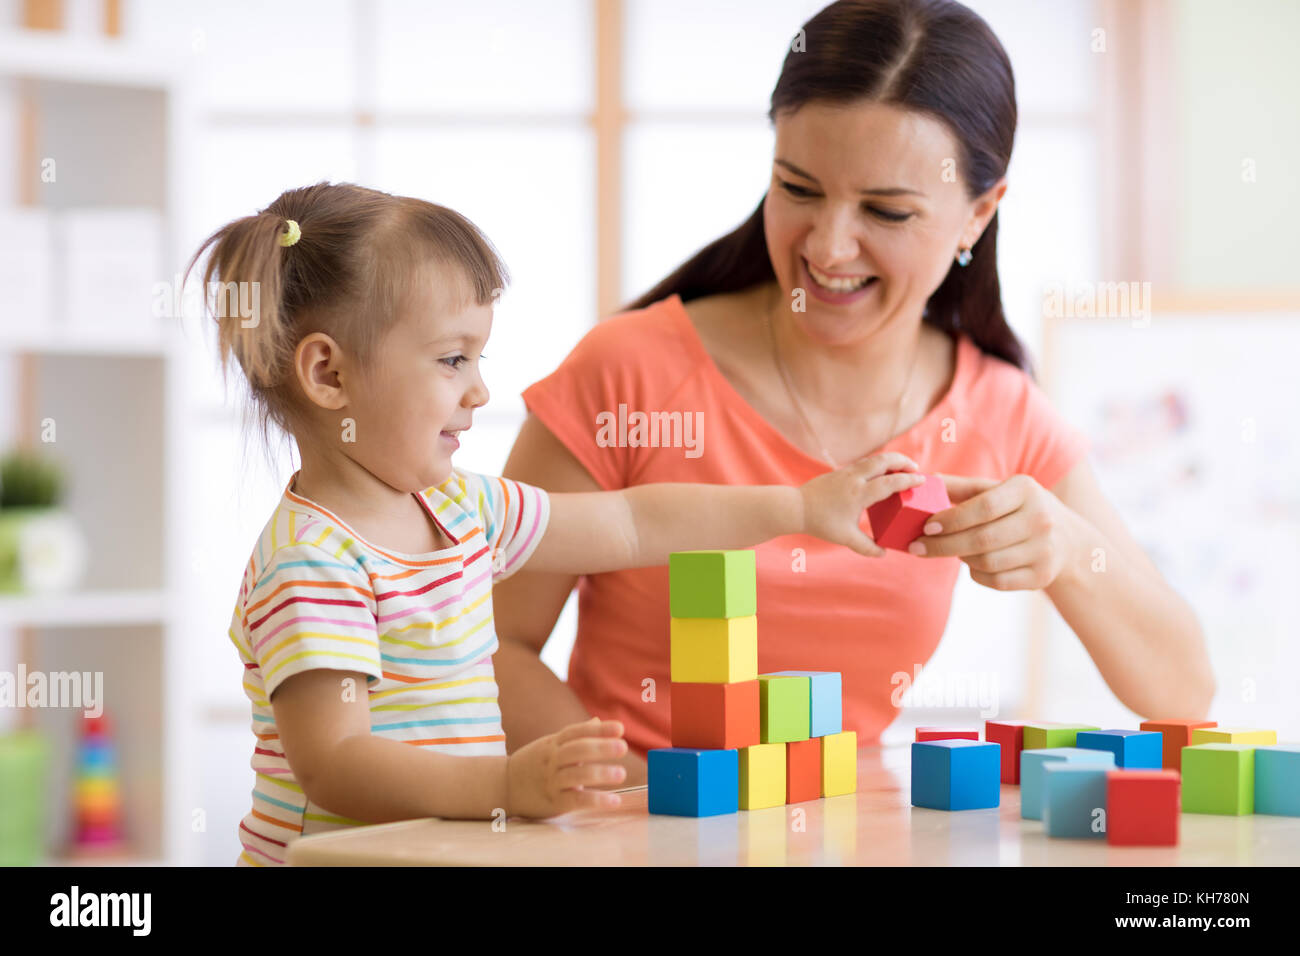 Süße Frau und Kind Mädchen spielen pädagogische Spielwaren im Kindergarten oder Kinderzimmer Stockfoto